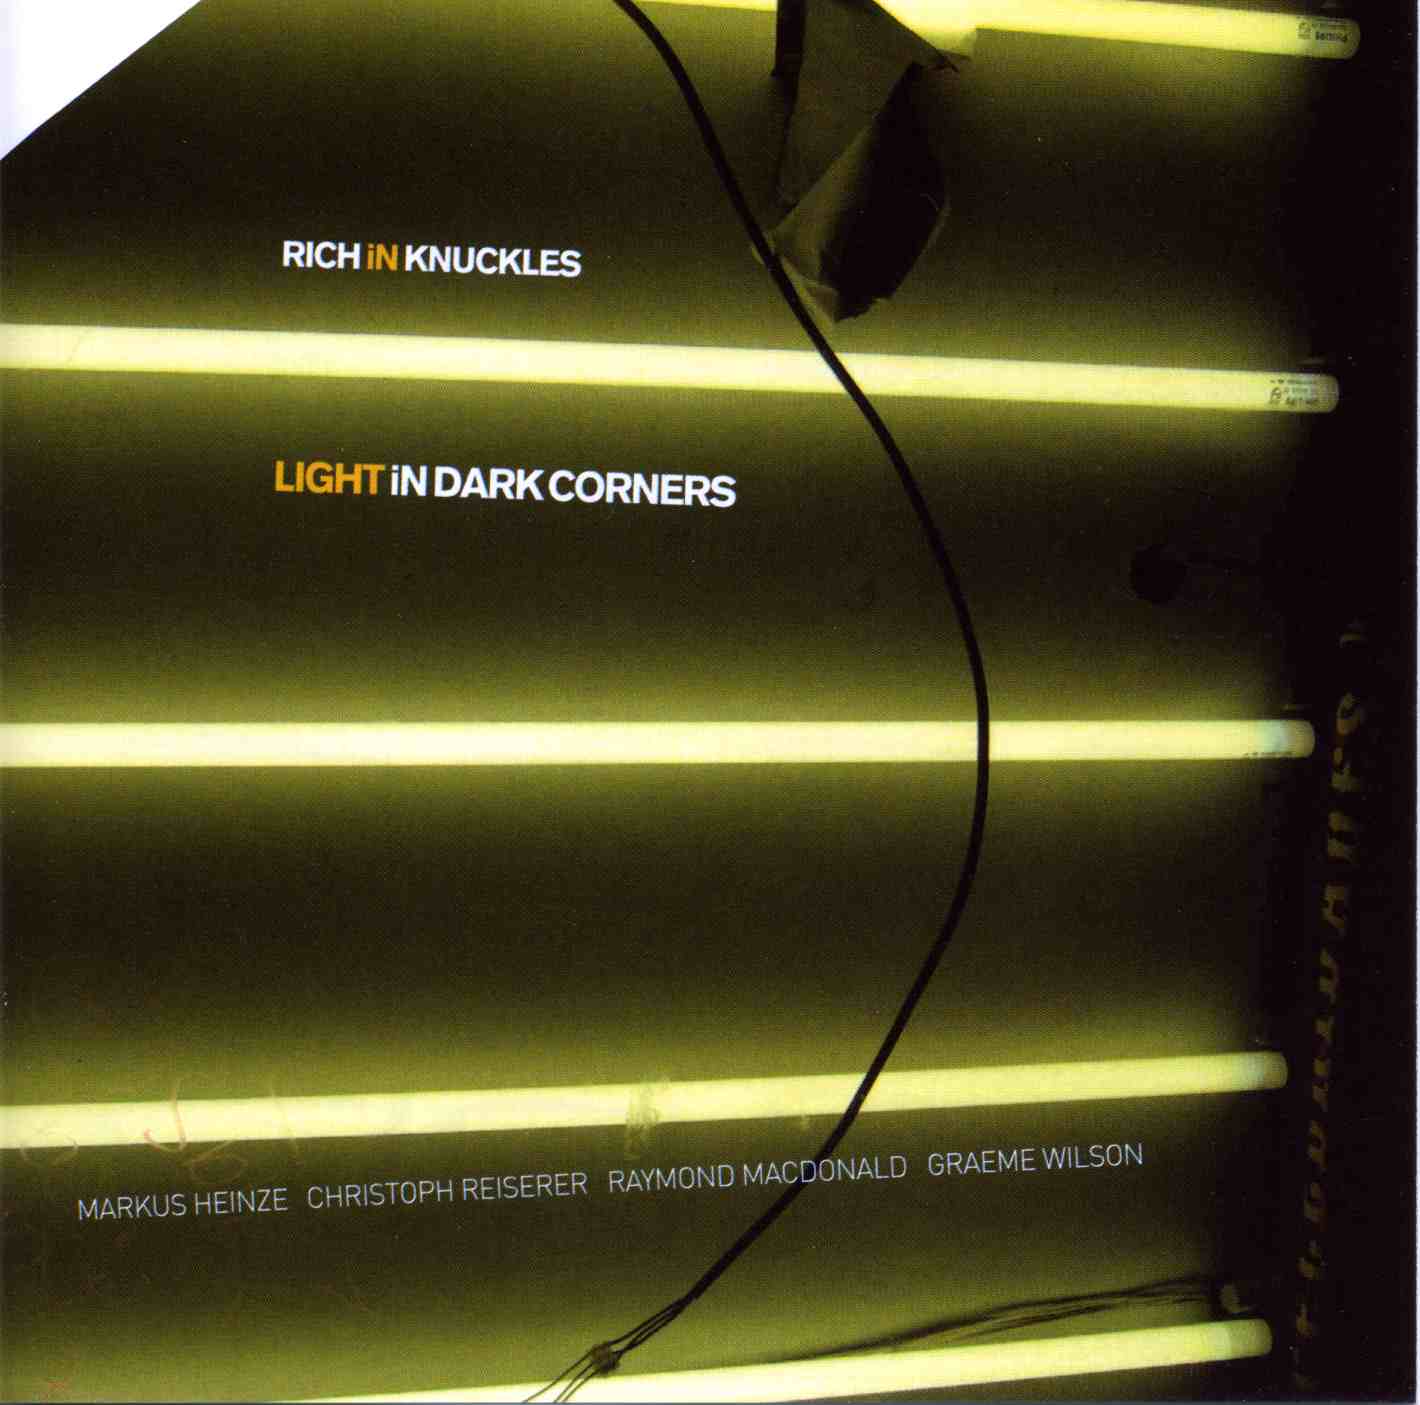 lightindrkcorners